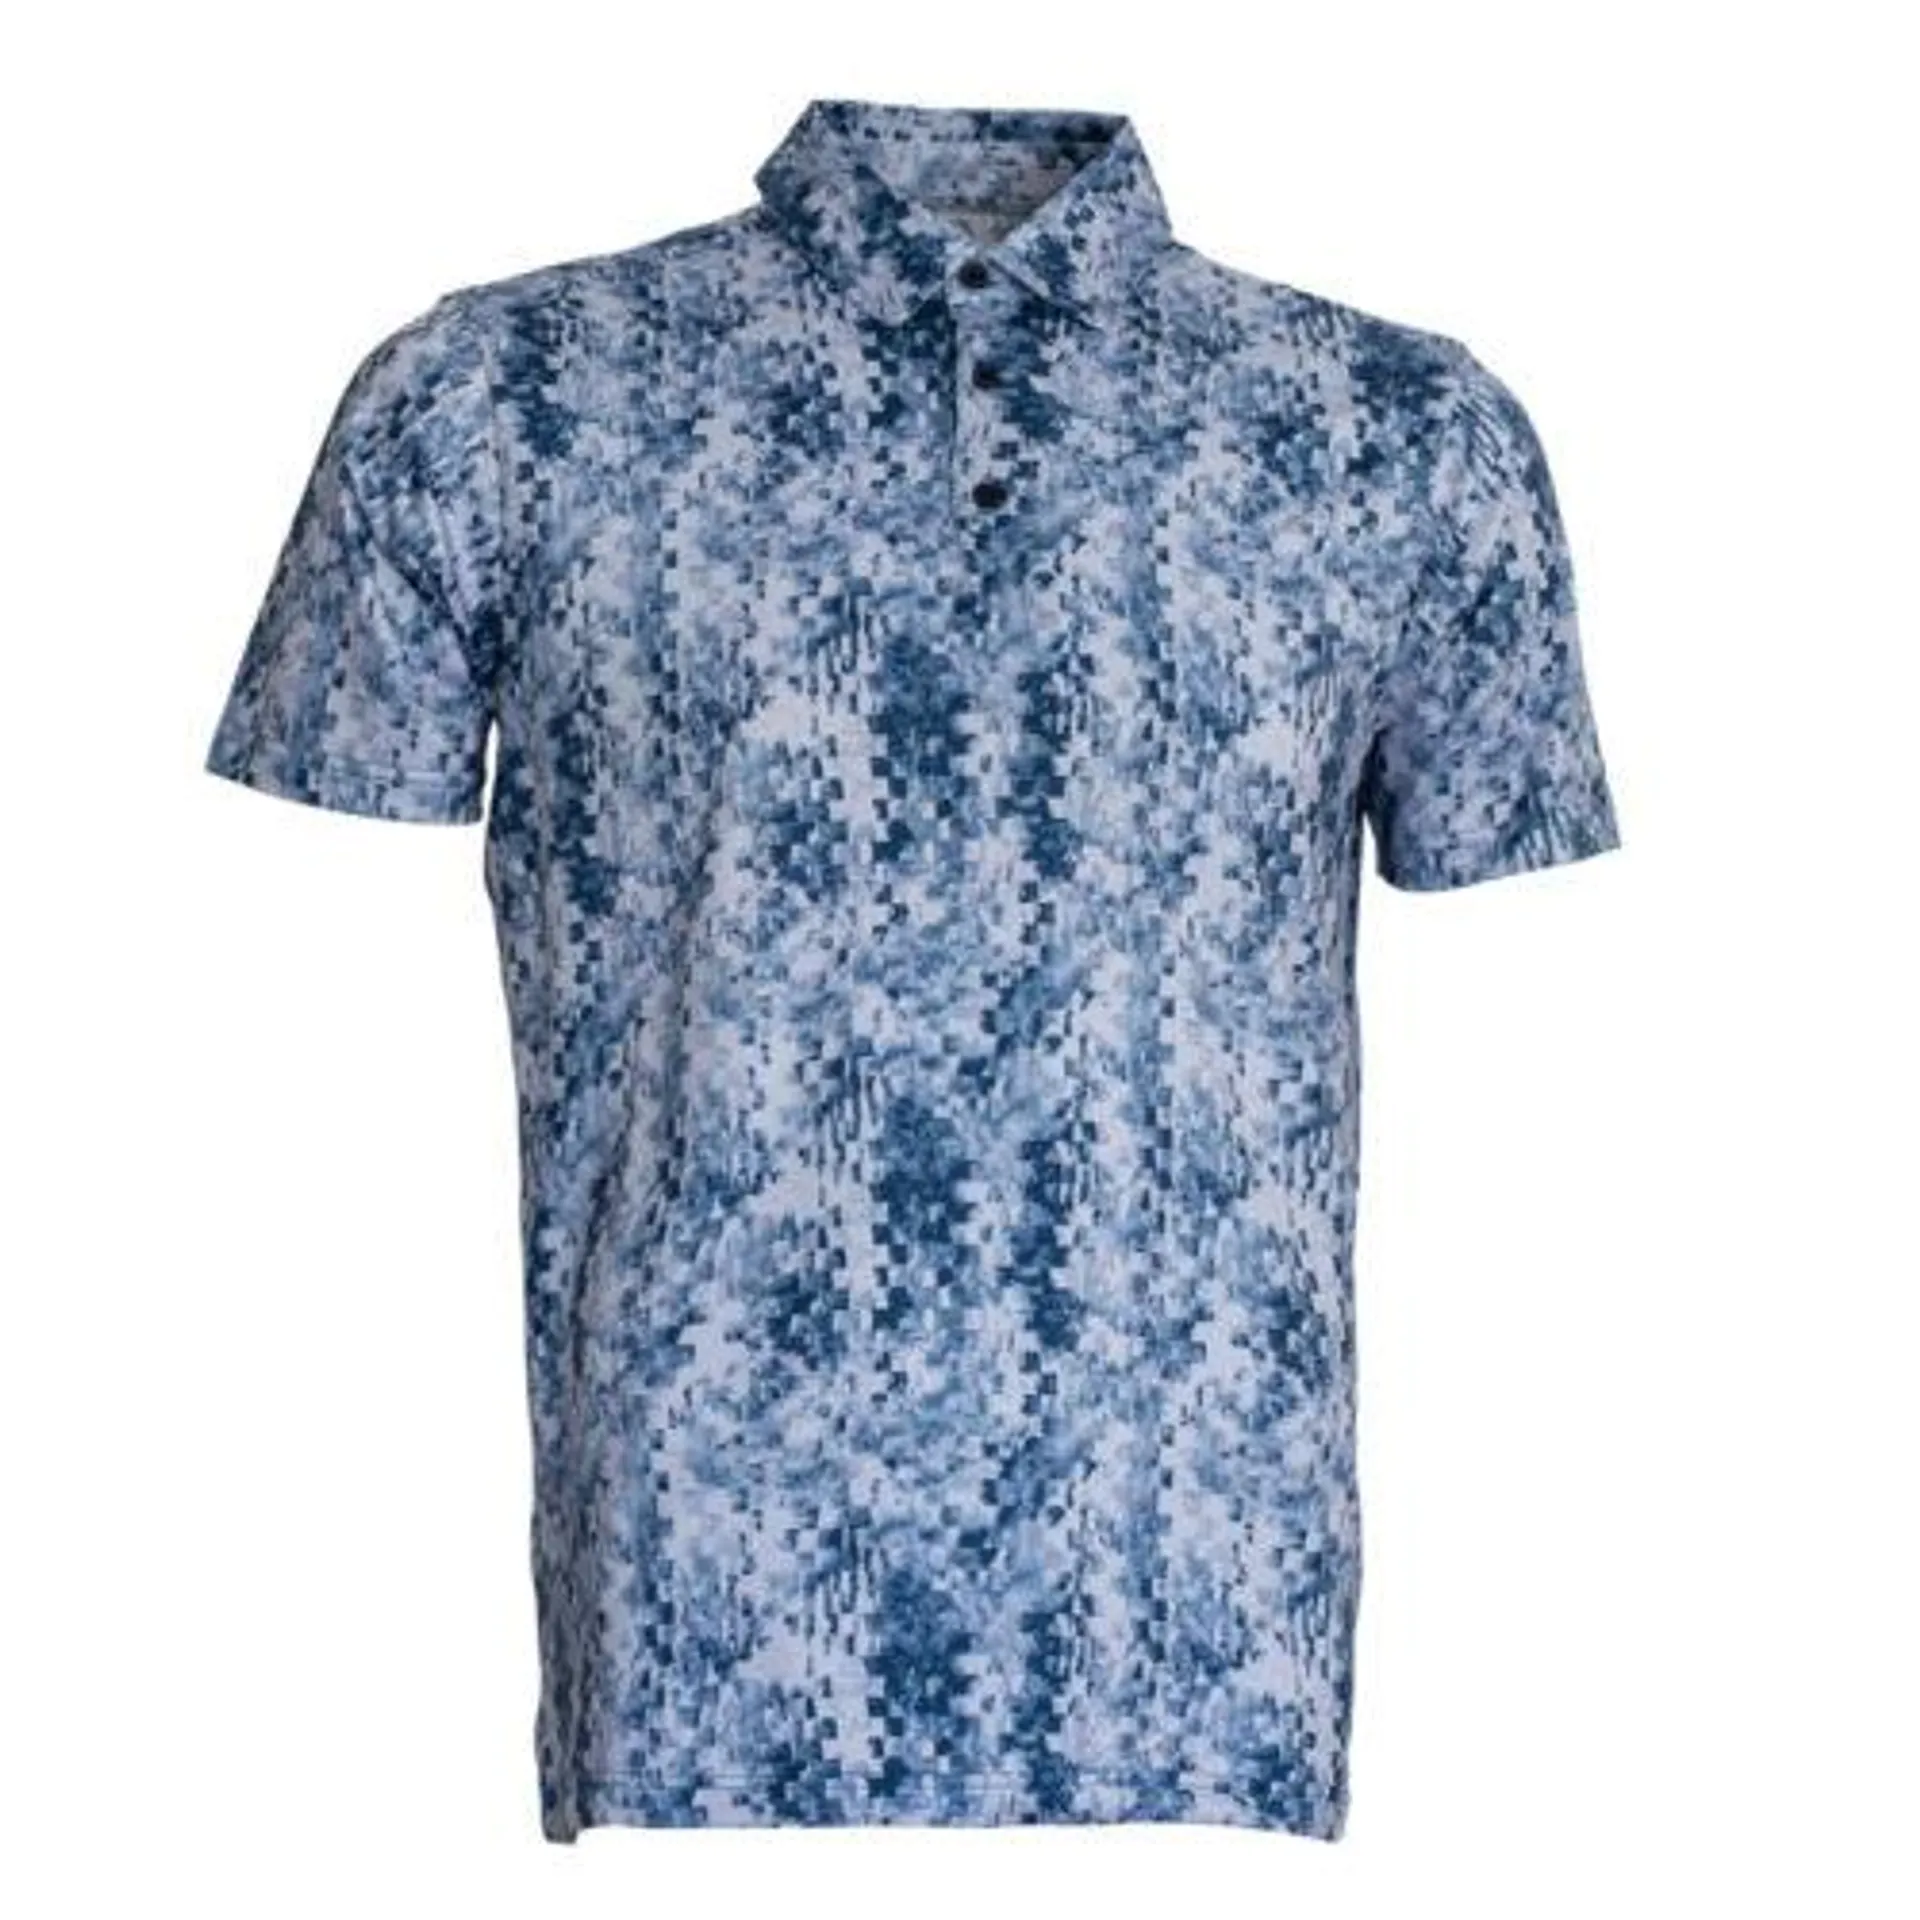 Cross Creek Digital Abstract Shirt – Navy/Blue